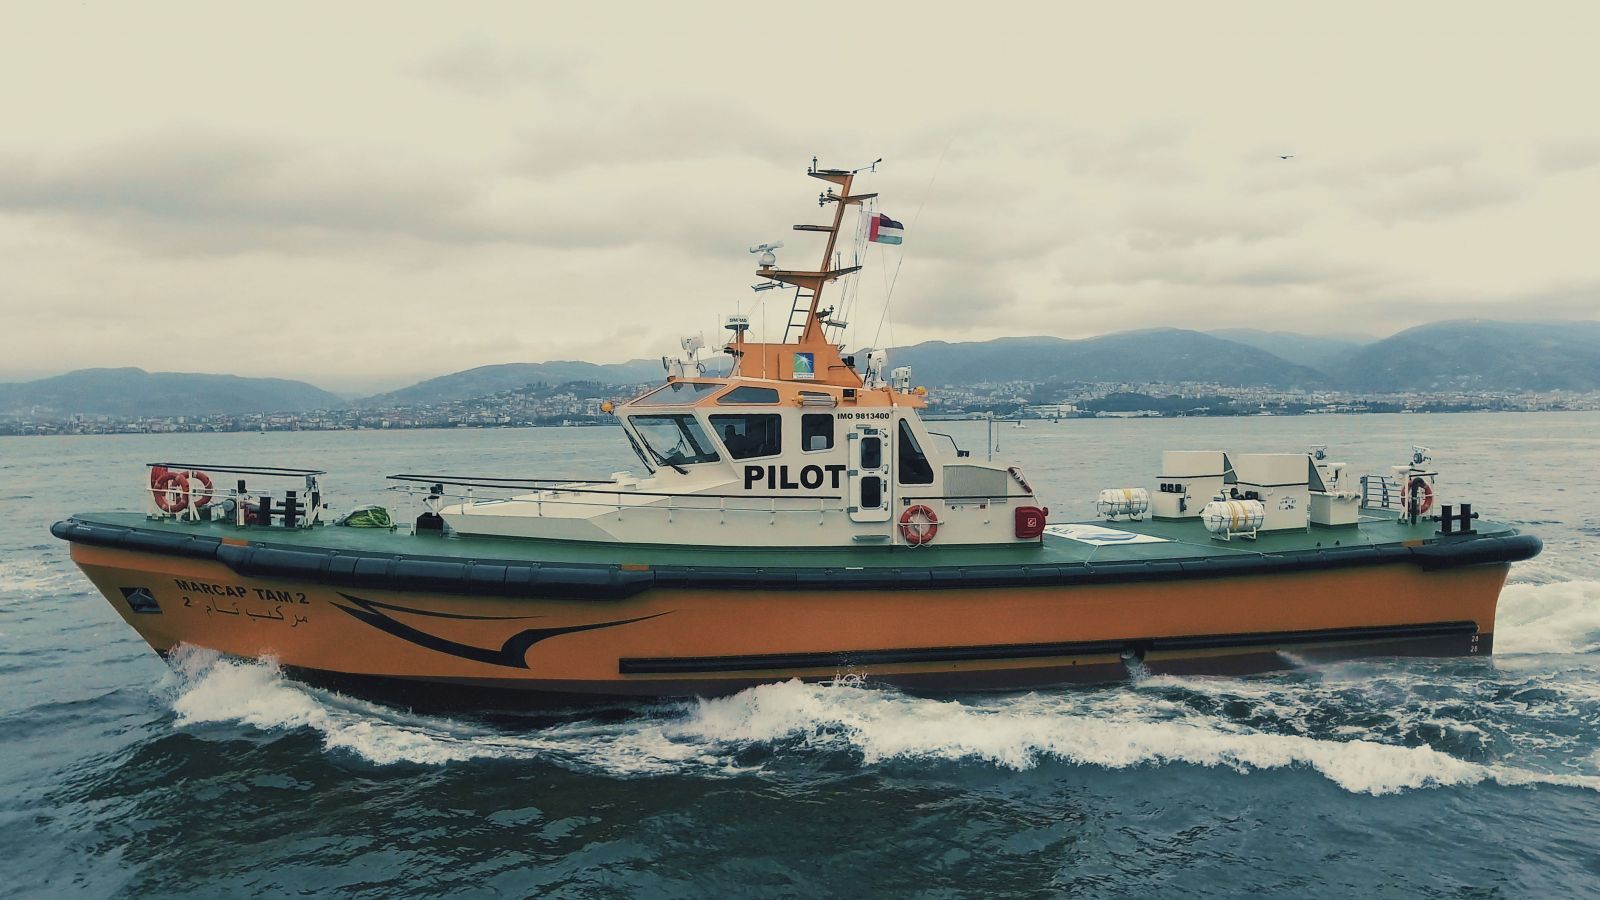  Pilot Boat-Macduff